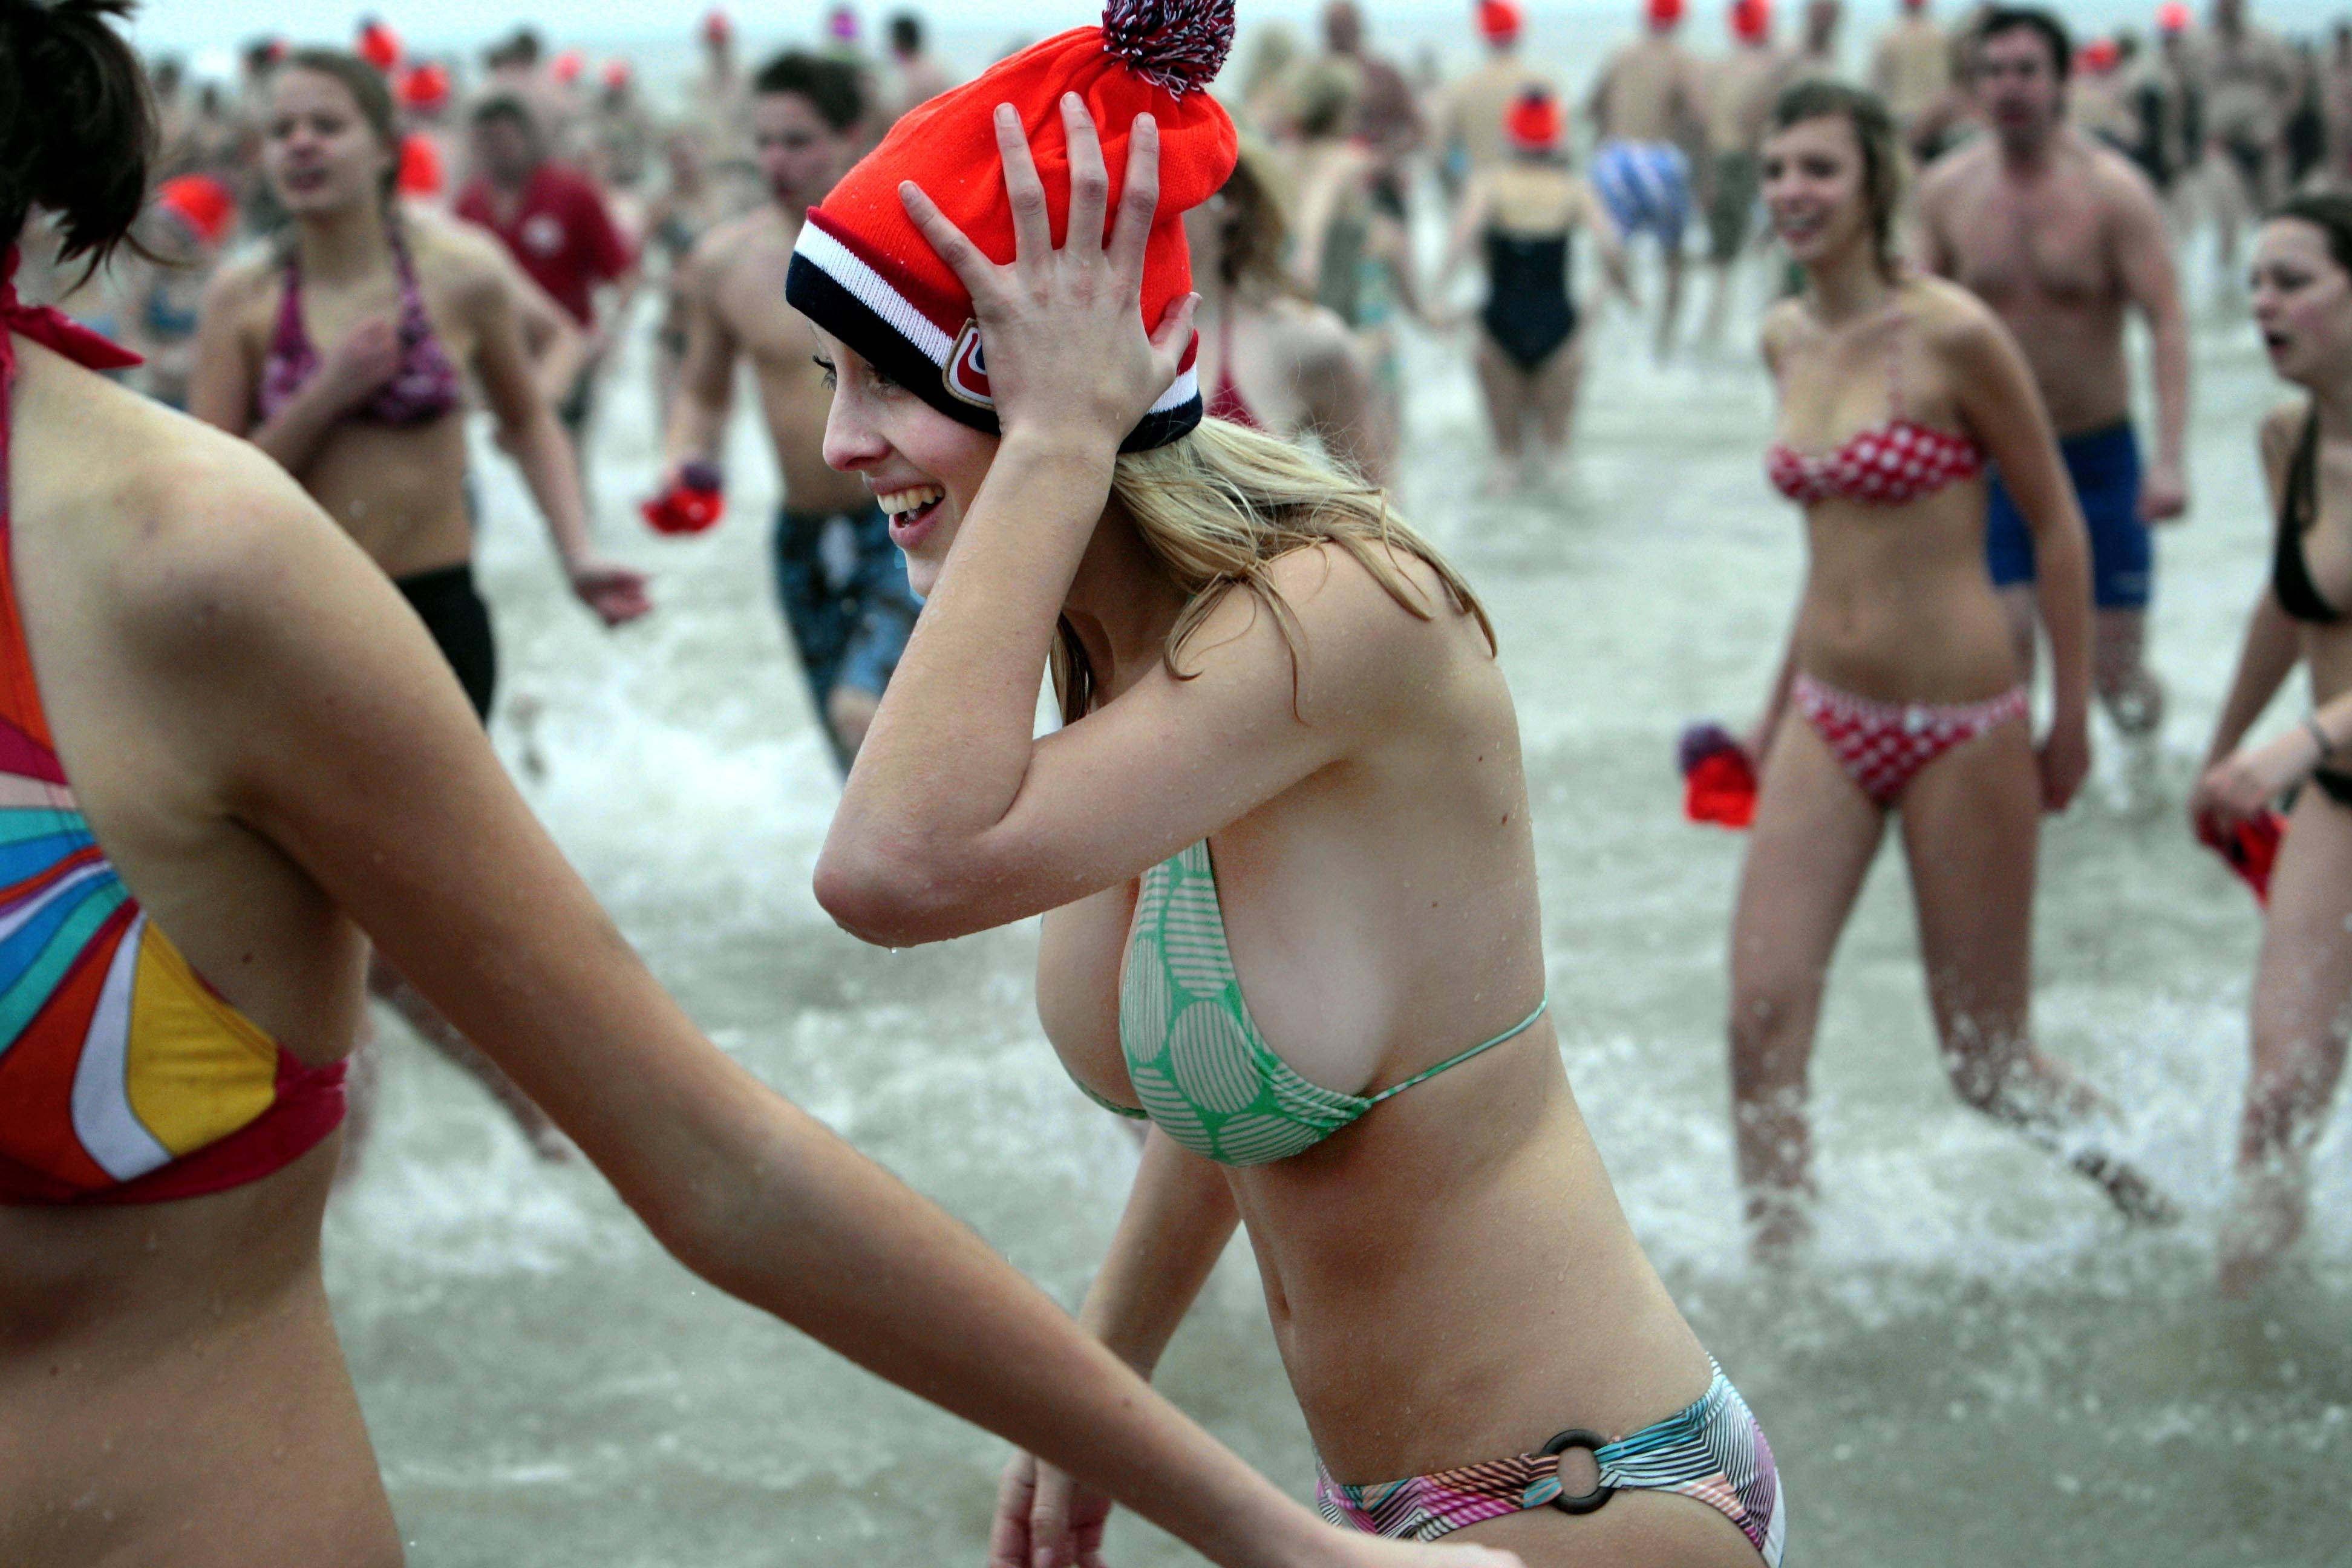 Bikini girls at a crowded beach